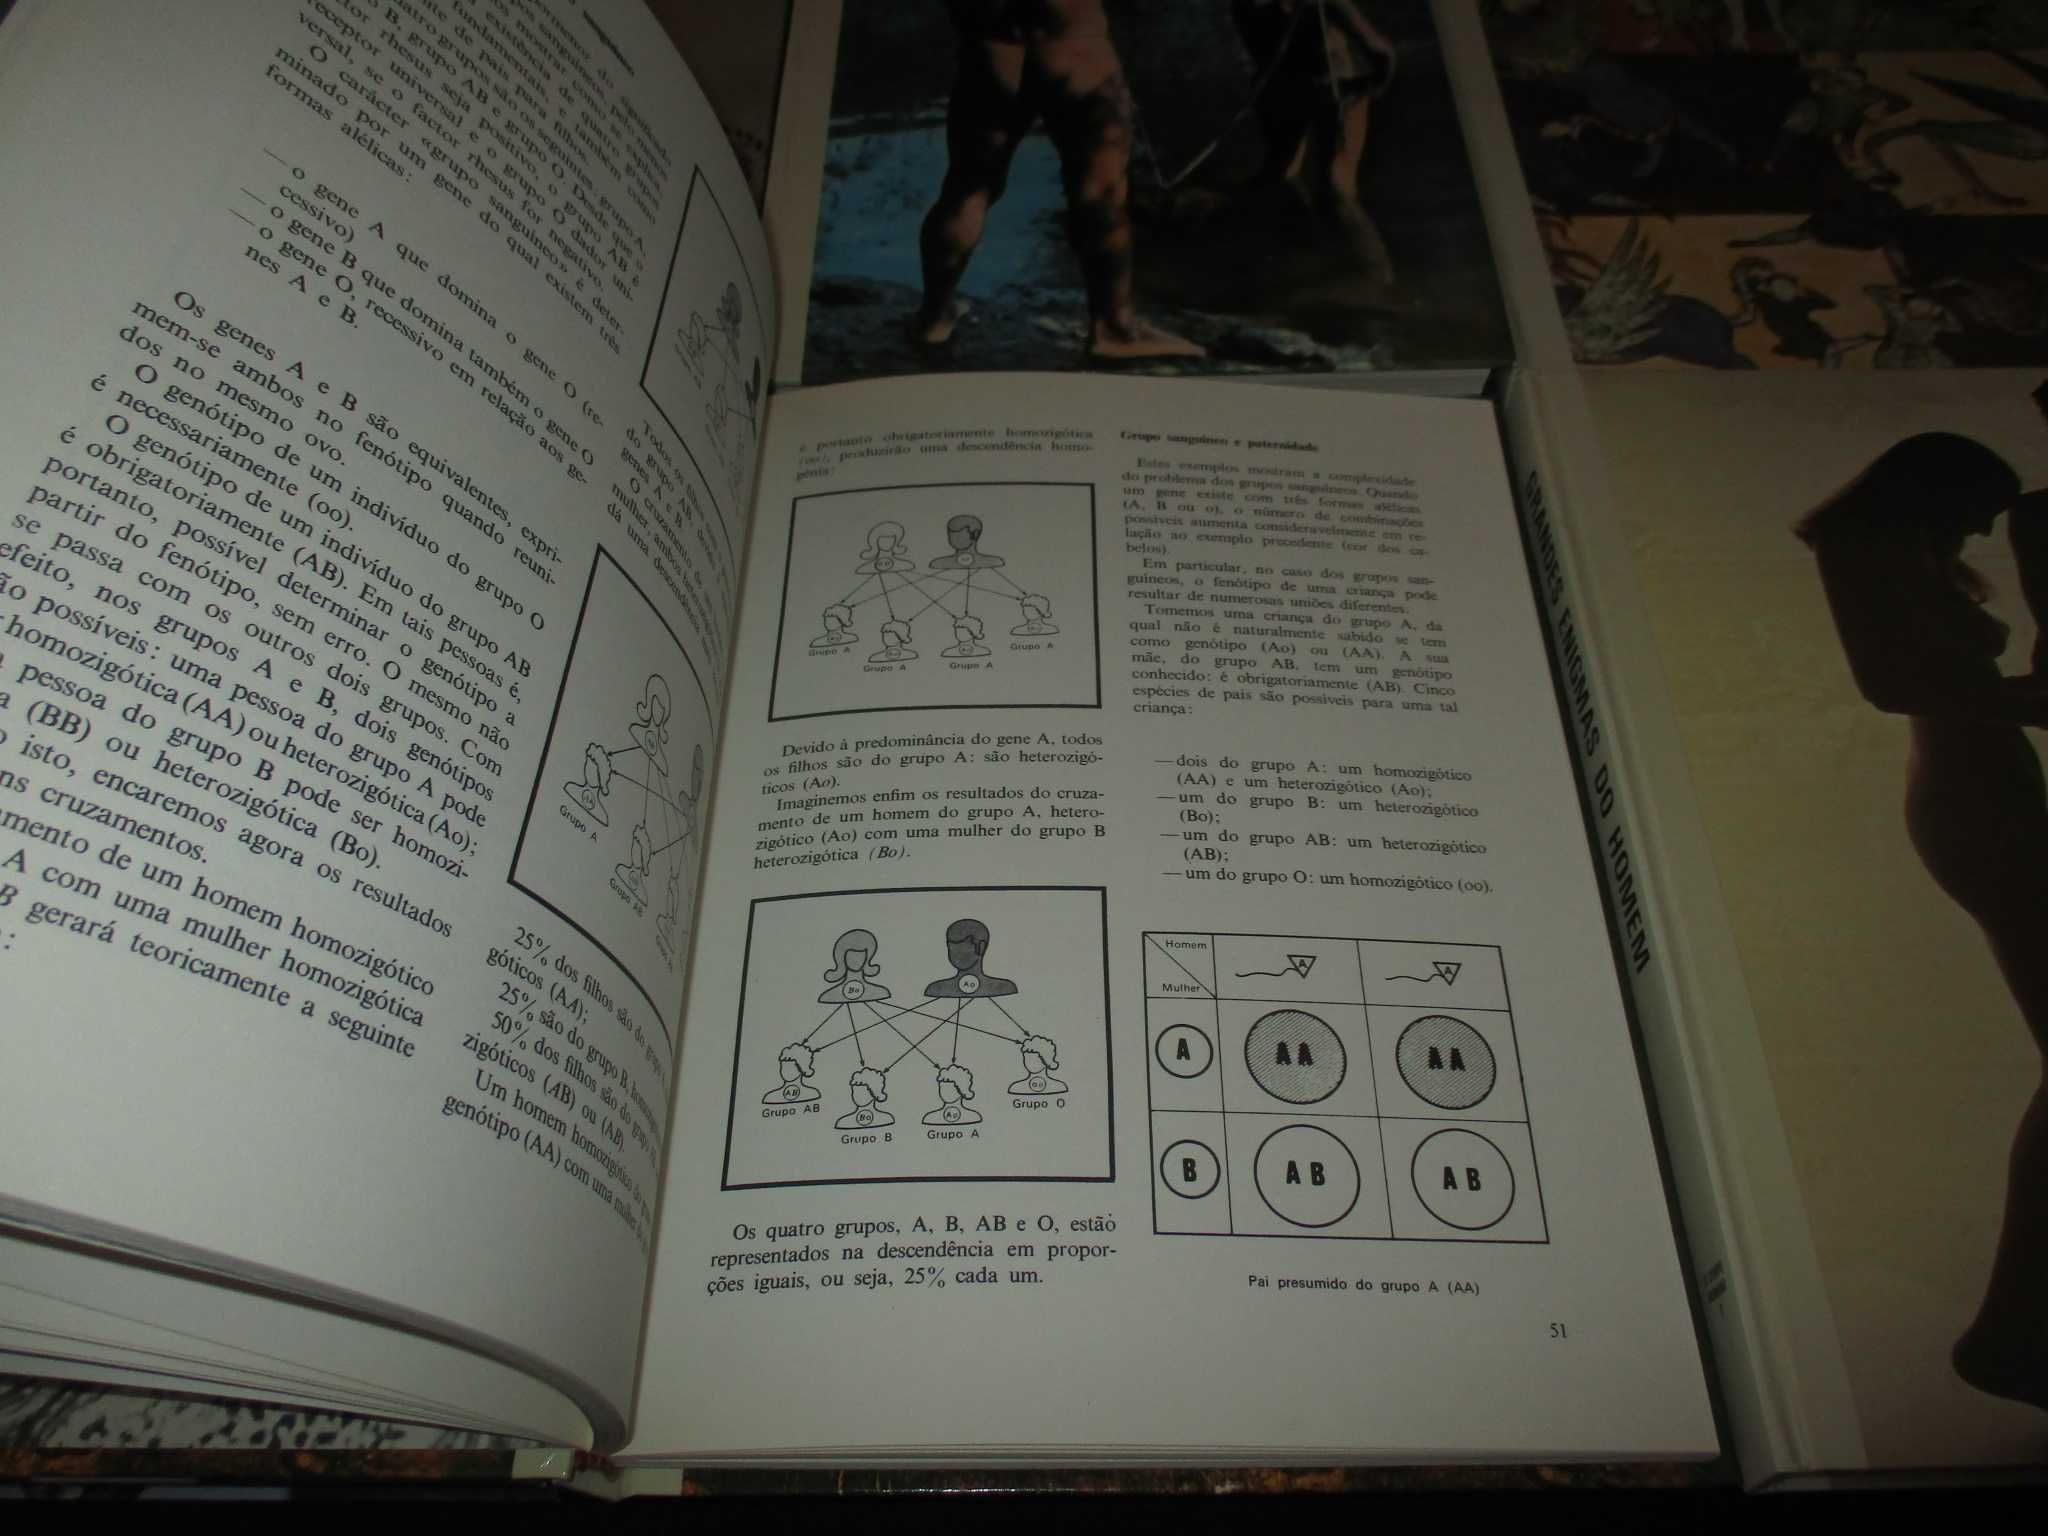 Livros Colecção Grandes Enigmas do Homem 6 Volumes - Completa